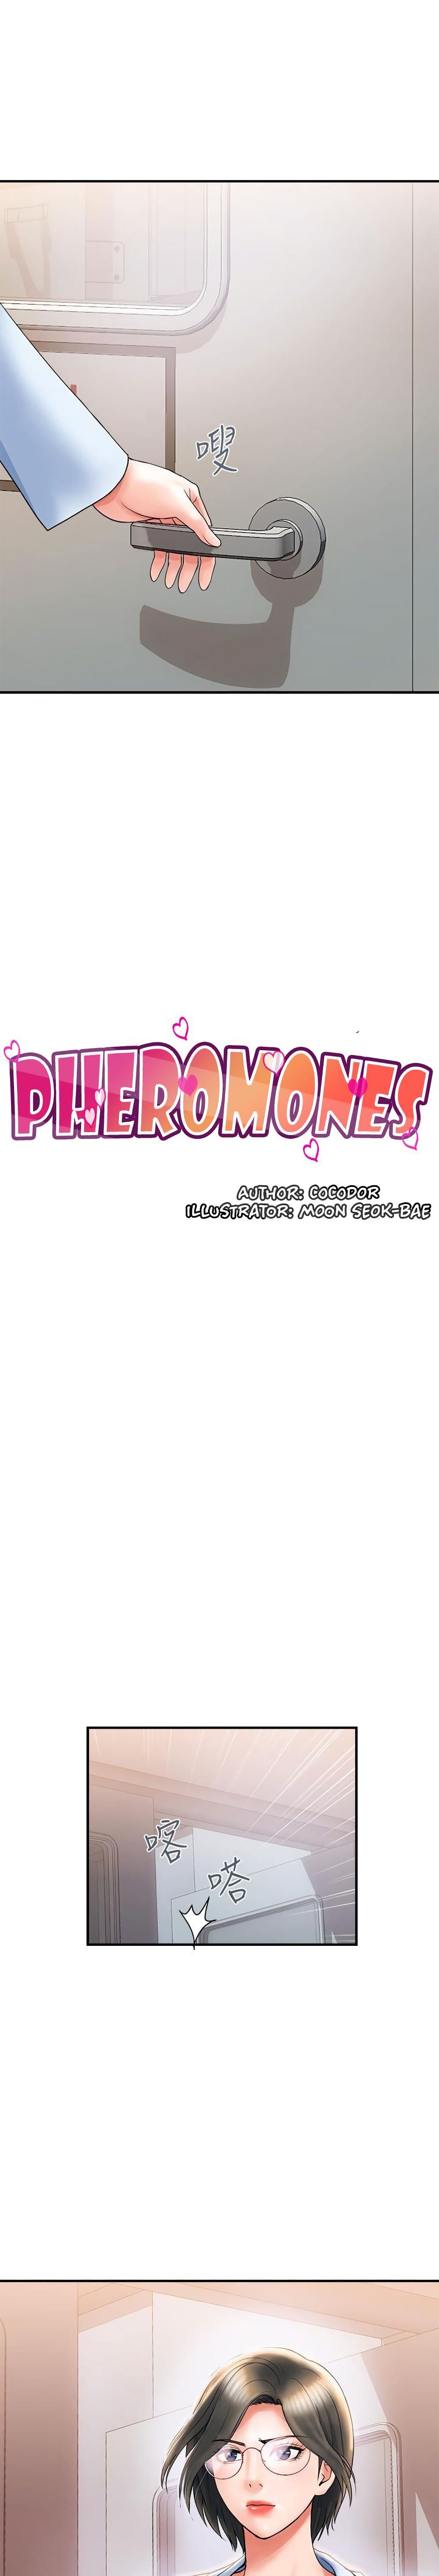 Pheromones 6 ภาพที่ 3